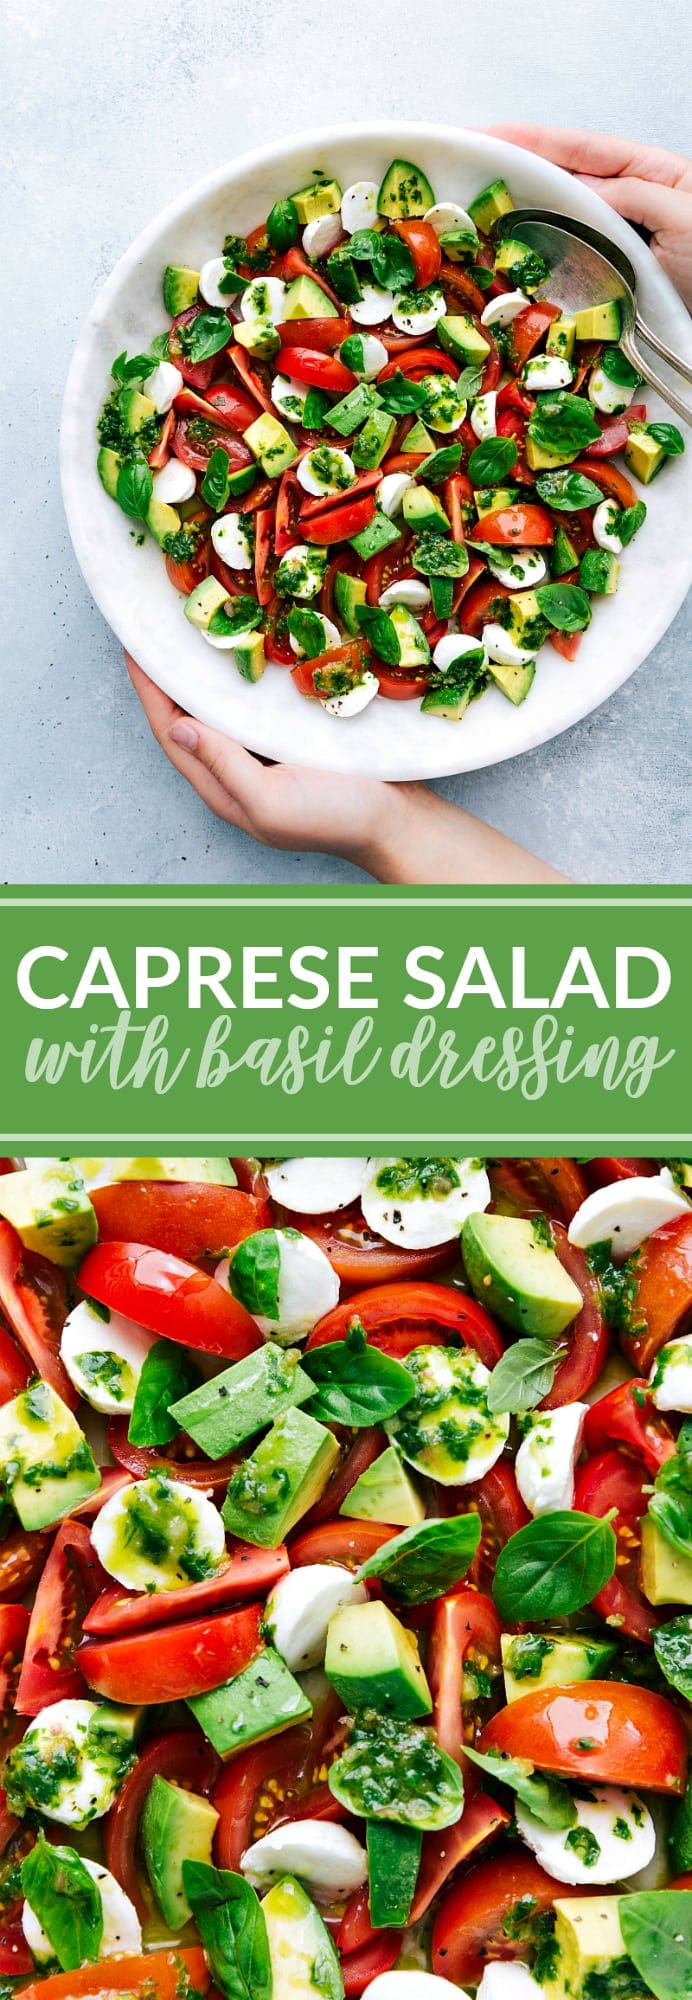 Skanus garsių itališkų „Caprese“ salotų pasirinkimas su paprastu baziliko užpilu!  per chelseasmessyapron.com